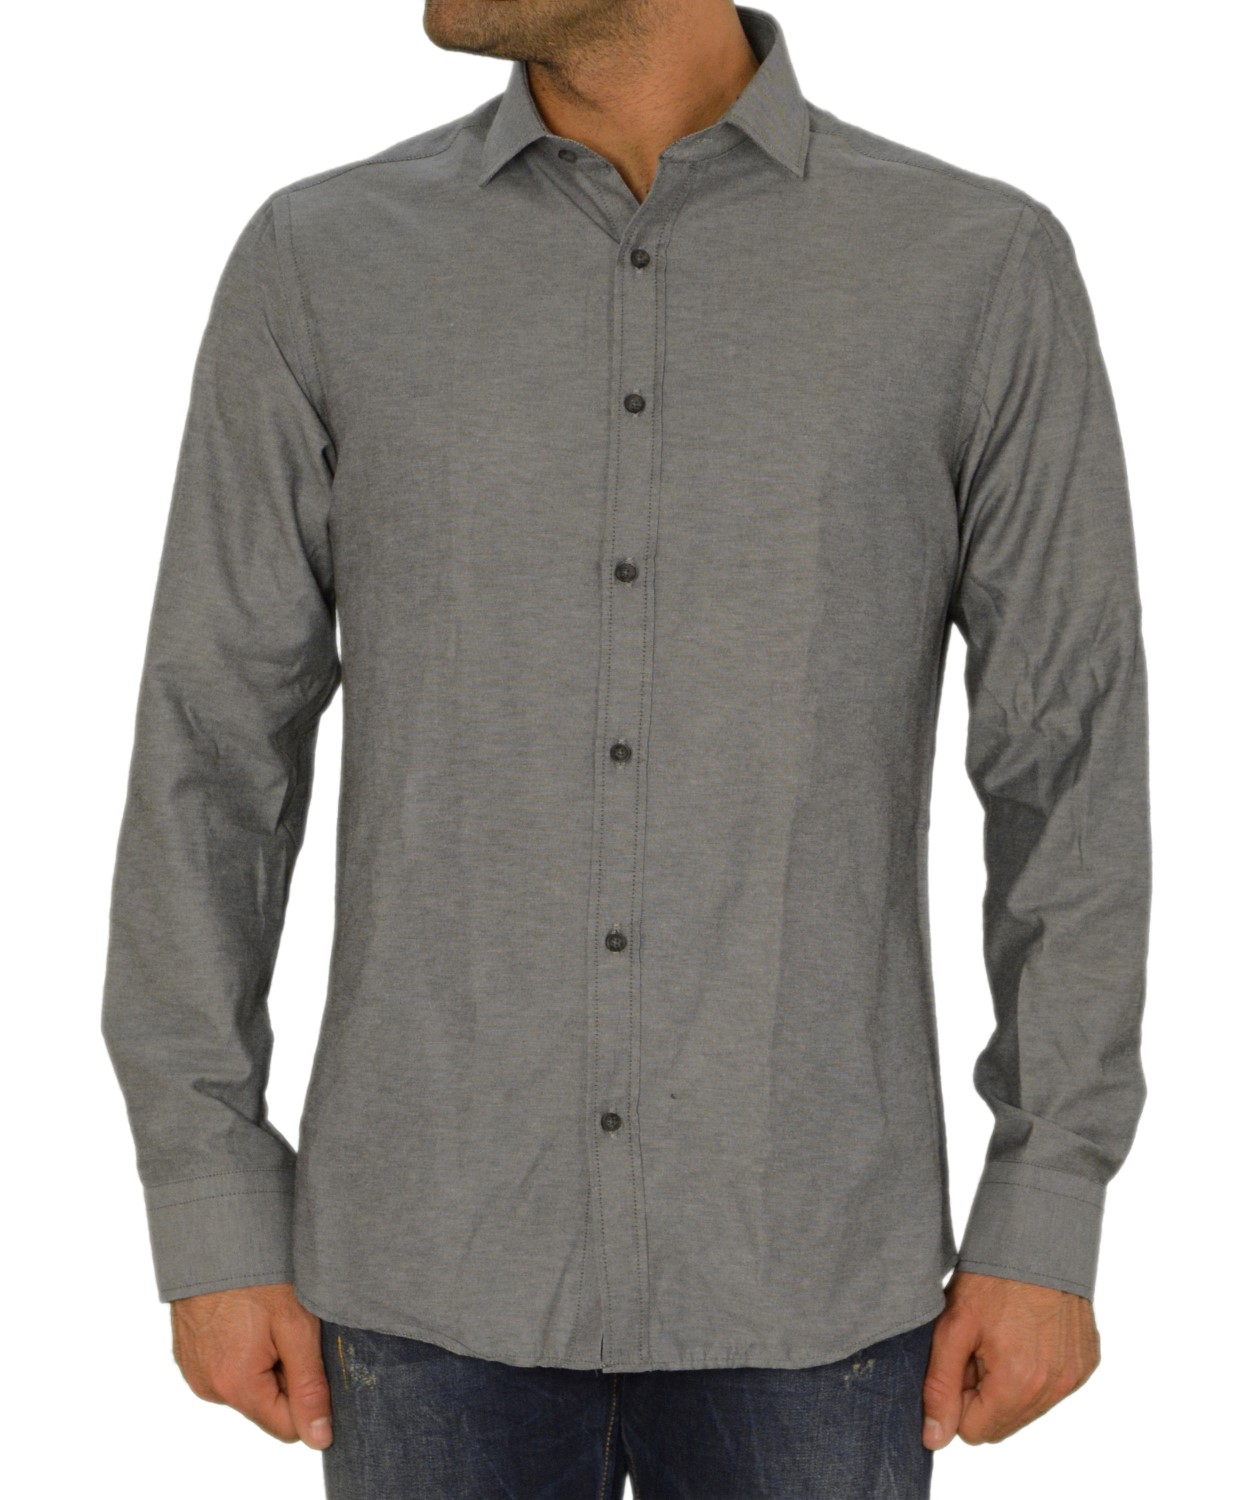 Ανδρικό πουκάμισο GioS ανθρακί 9545W17F